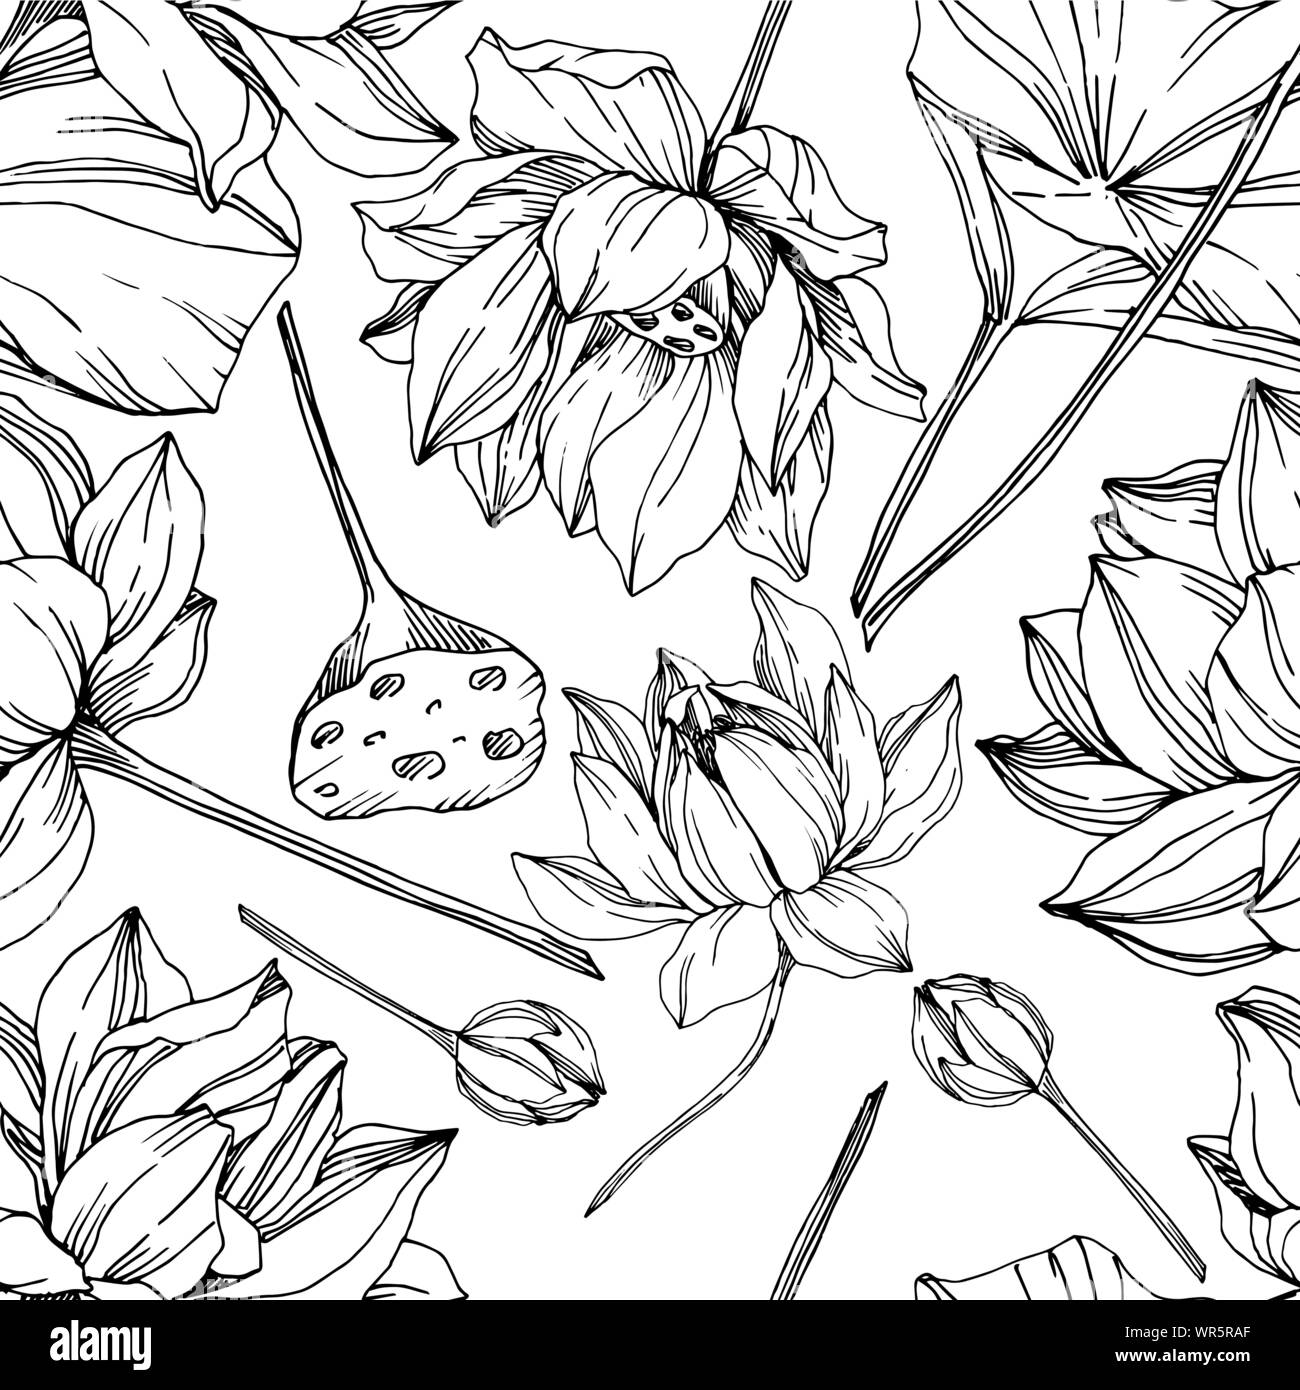 Vektor Lotus Blumen botanischen Blumen. Schwarz und weiß eingraviert Tinte Art nahtlose Muster. Stock Vektor